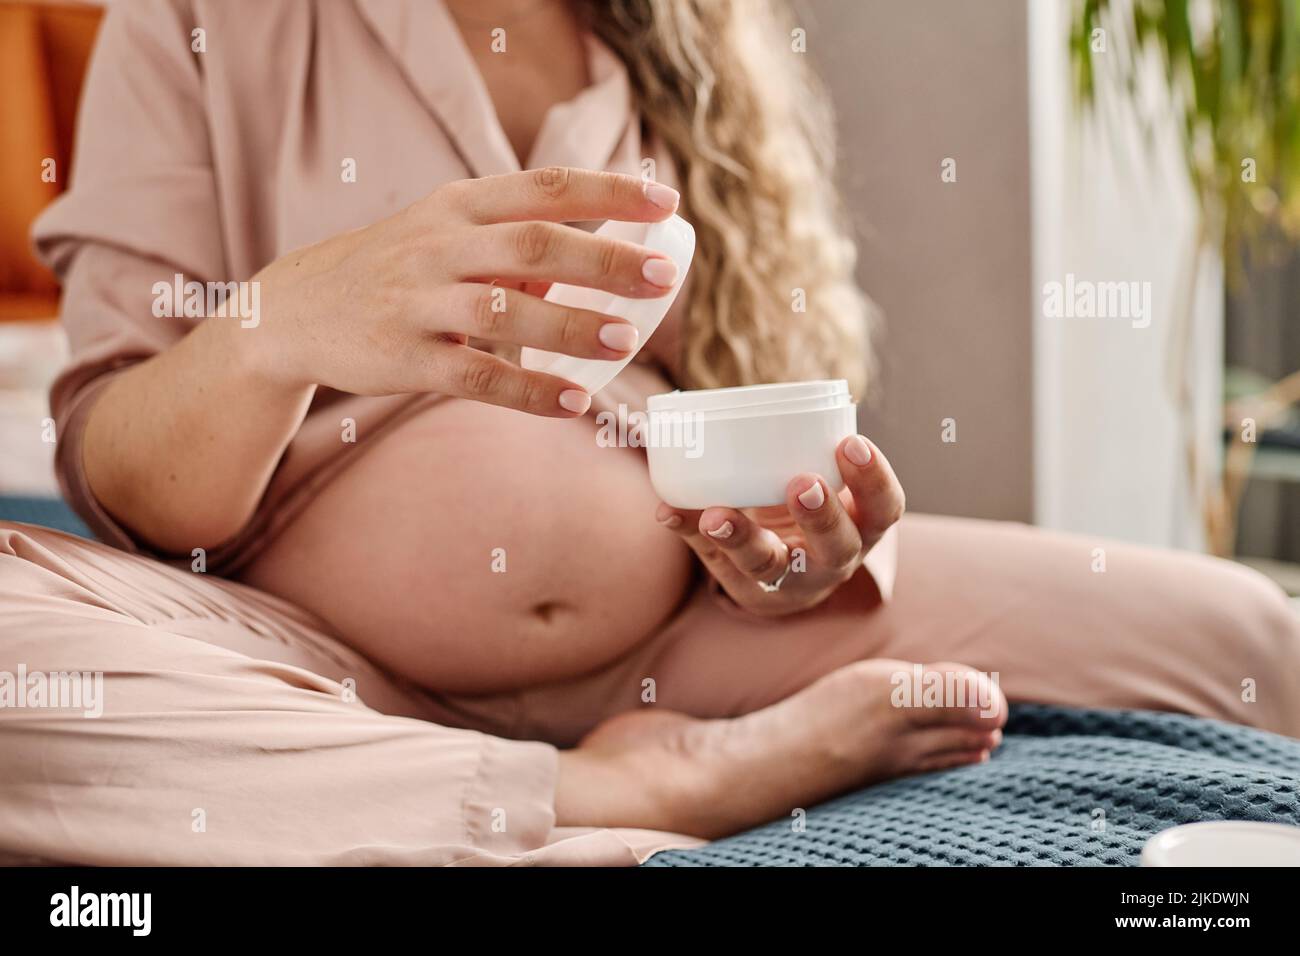 Hände einer jungen Schwangeren, die ein weißes, offenes Plastikglas und seinen Deckel halten, während sie Creme auf ihre Hände oder ihren Körper auftragen Stockfoto